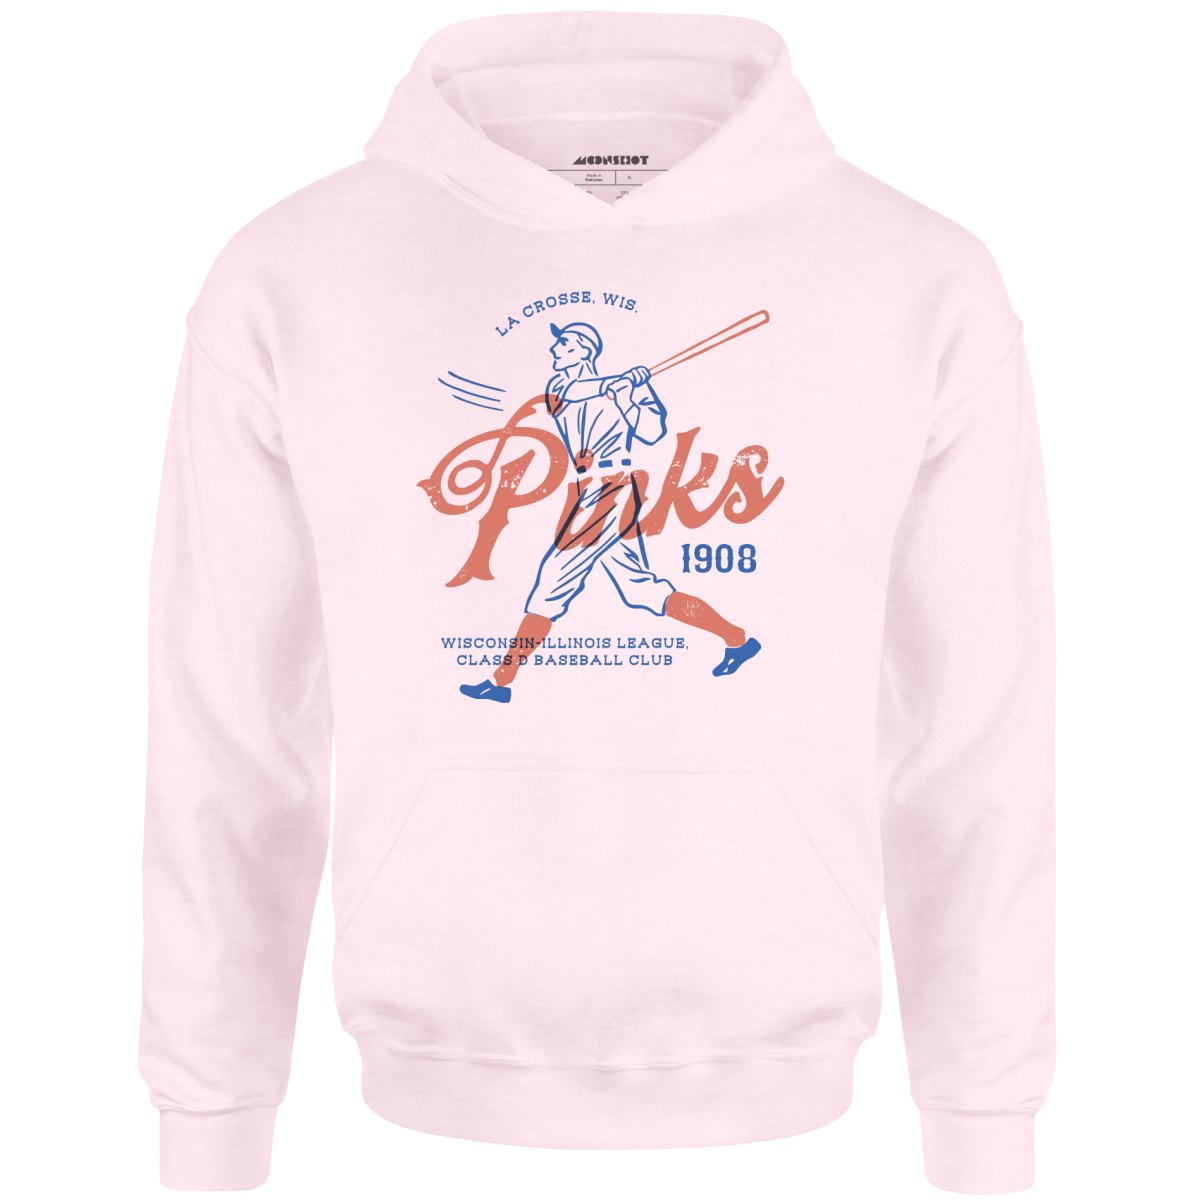 La Crosse Pinks - Wisconsin - Vintage Defunct Baseball Teams - Unisex Hoodie